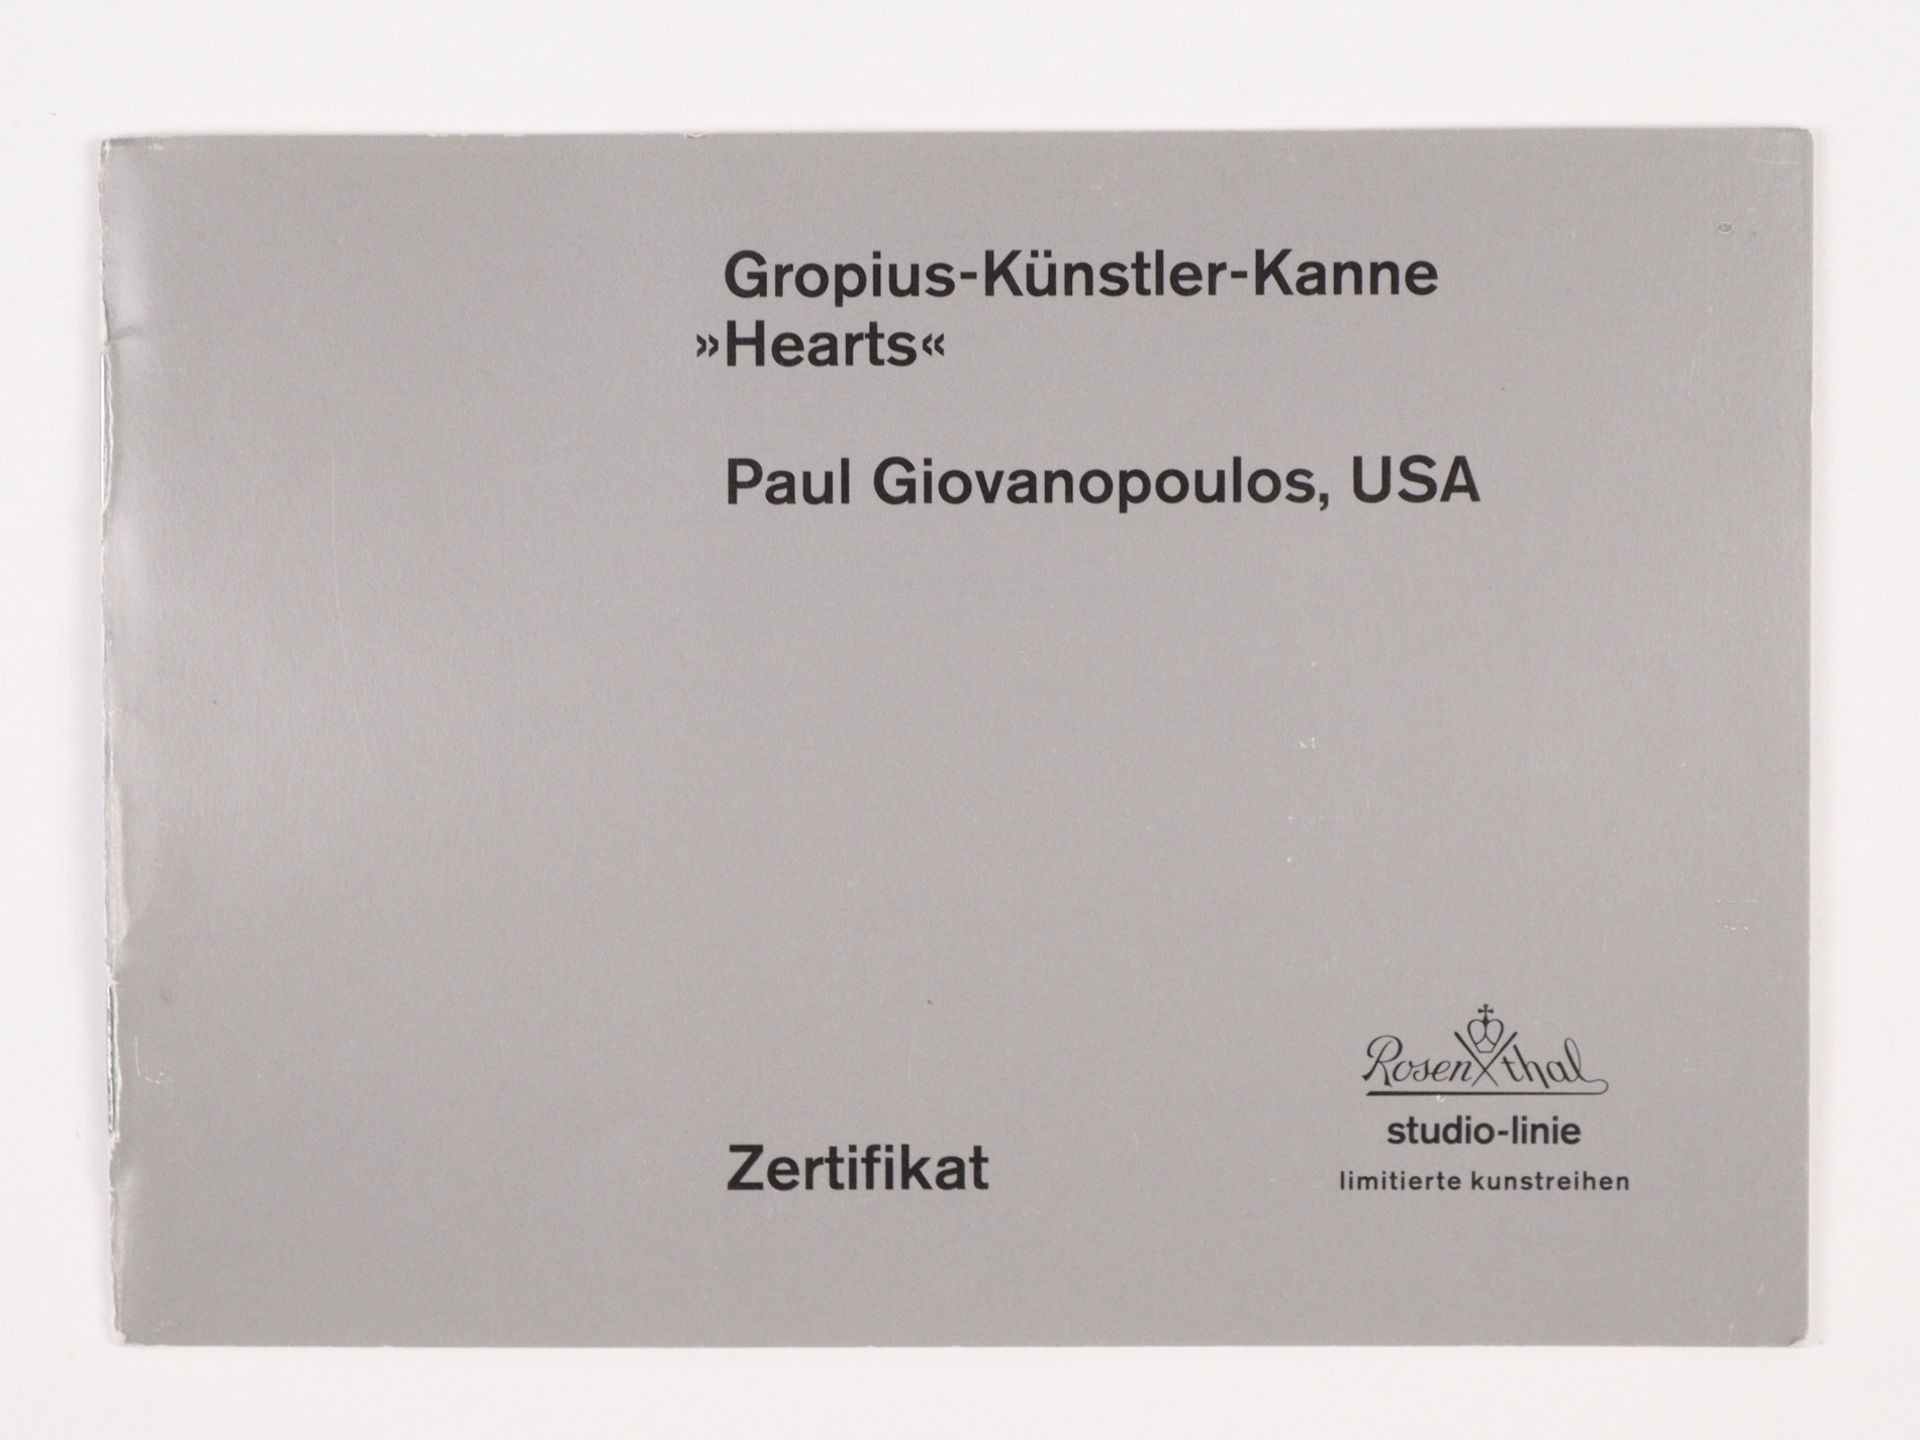 Rosenthal studio-linie - Gropius-Künstler-Kanne Paul Giovanopoulos, USA - Bild 2 aus 8